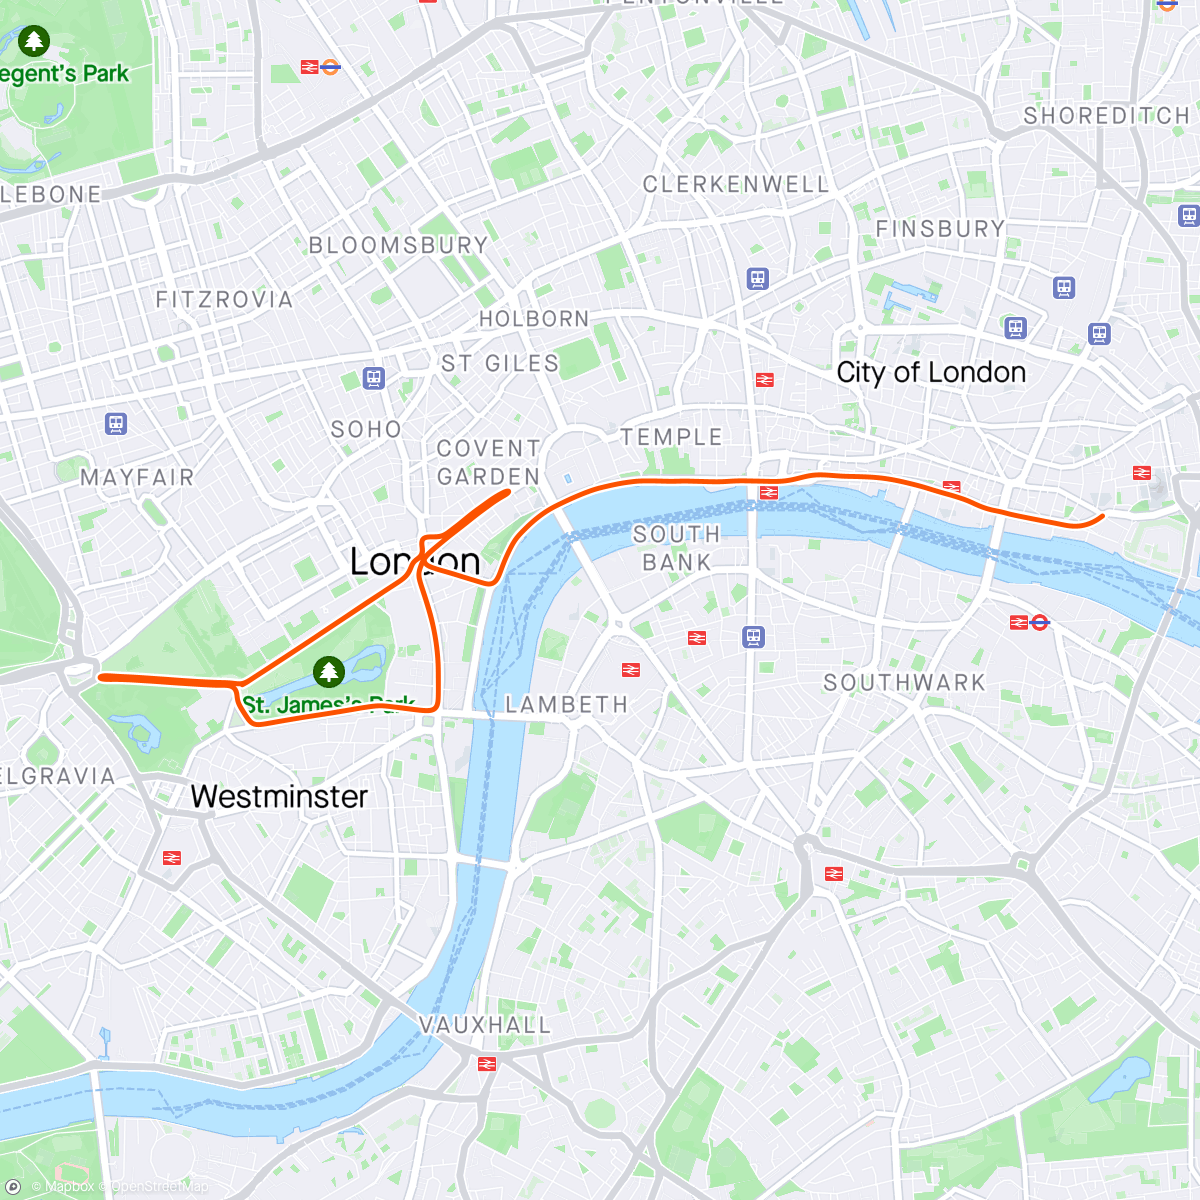 「Zwift - Race: Stage 5: Lap It Up - London Classique (C) on Classique in London」活動的地圖